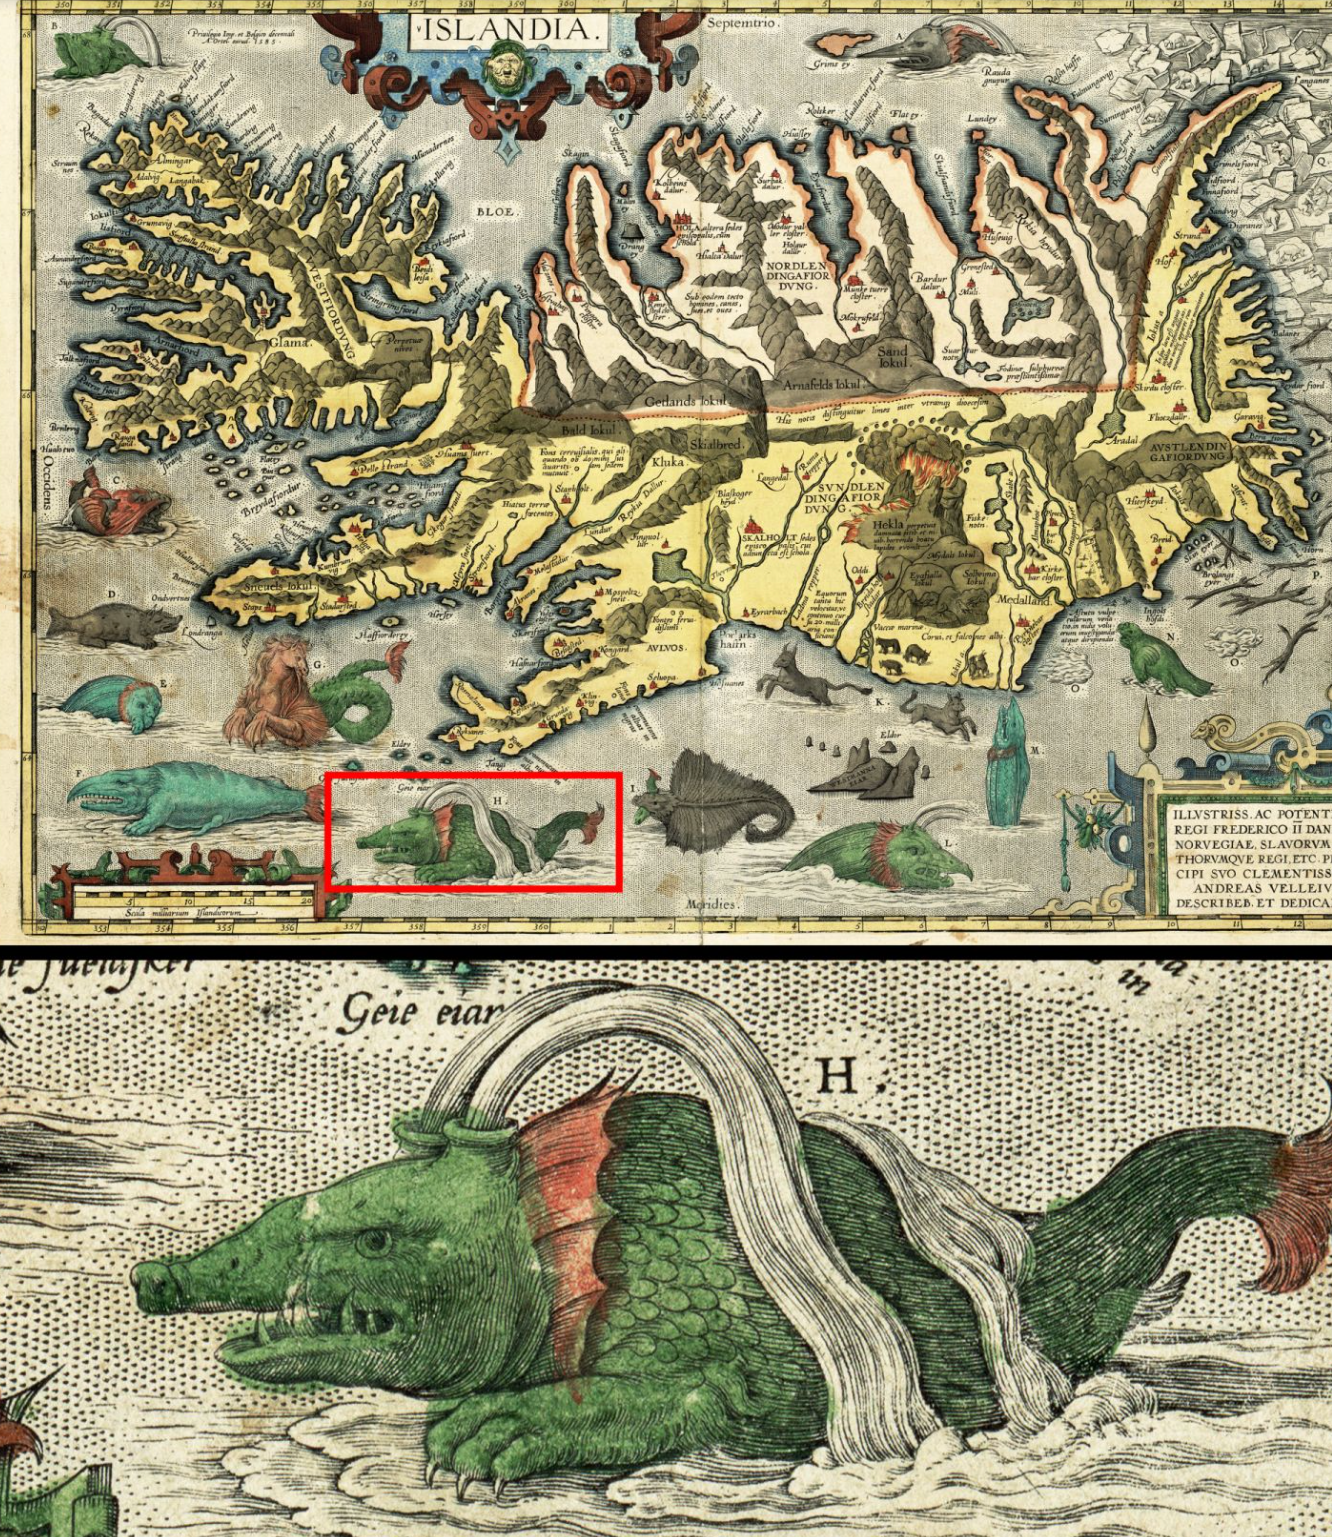 Vén màn bí mật về quái vật biển đáng sợ hafgufa, nỗi kinh hãi của vùng biển Bắc Âu - Ảnh 3.